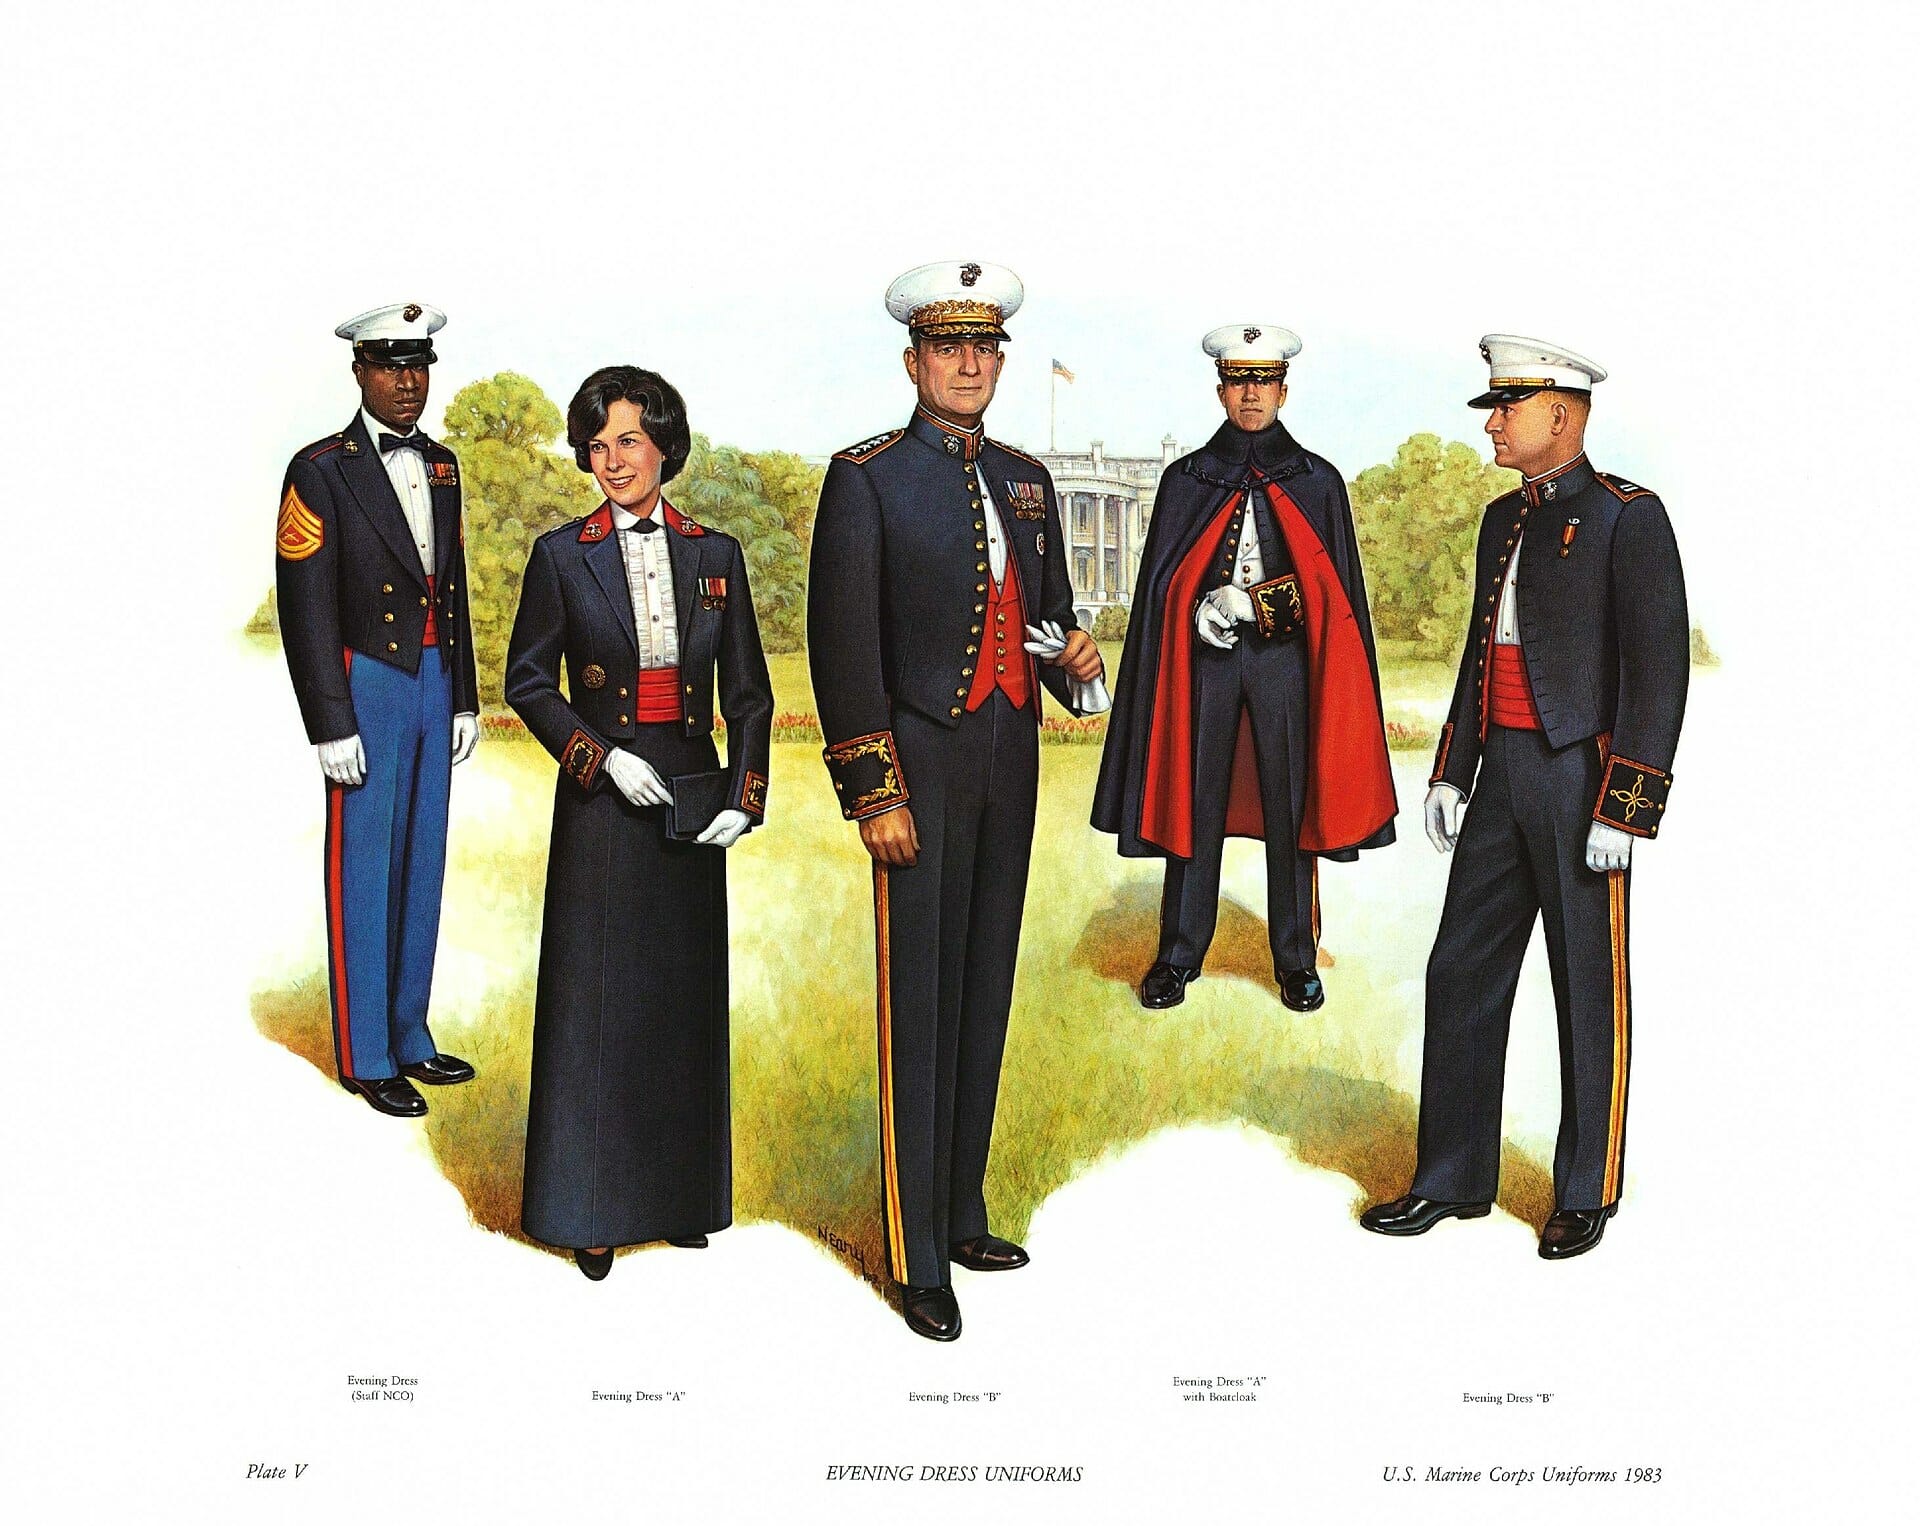 military tuxedo